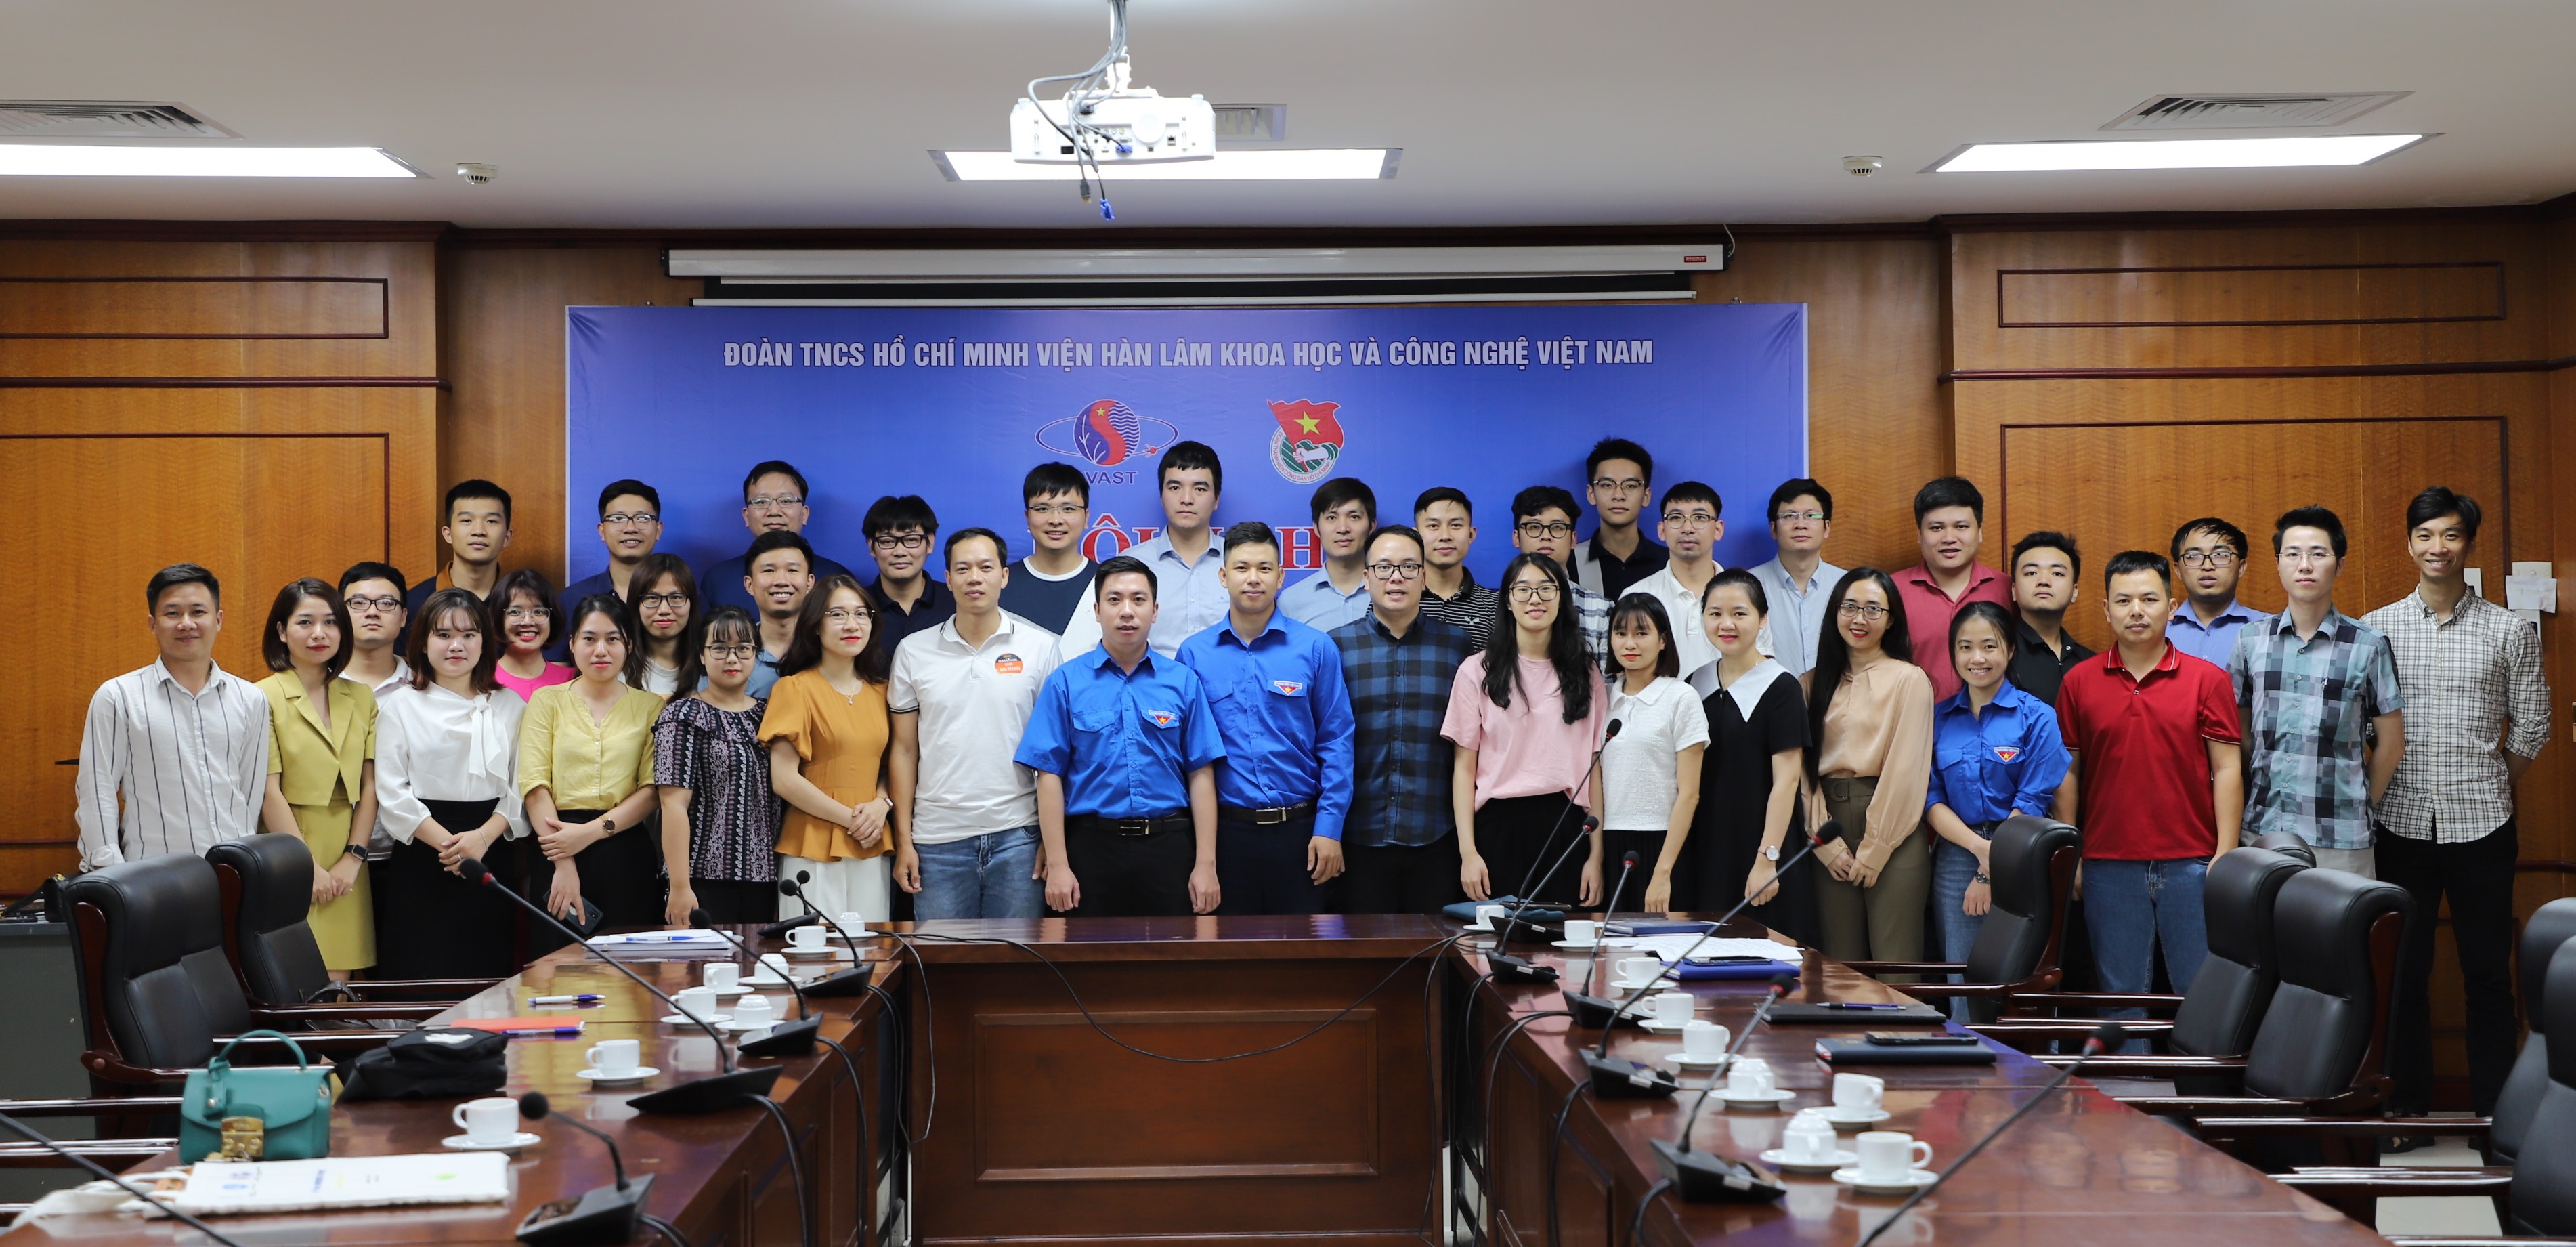 Hội nghị Ban Chấp hành Đoàn Thanh niên Viện Hàn lâm Khoa học và Công nghệ Việt Nam lần thứ Hai